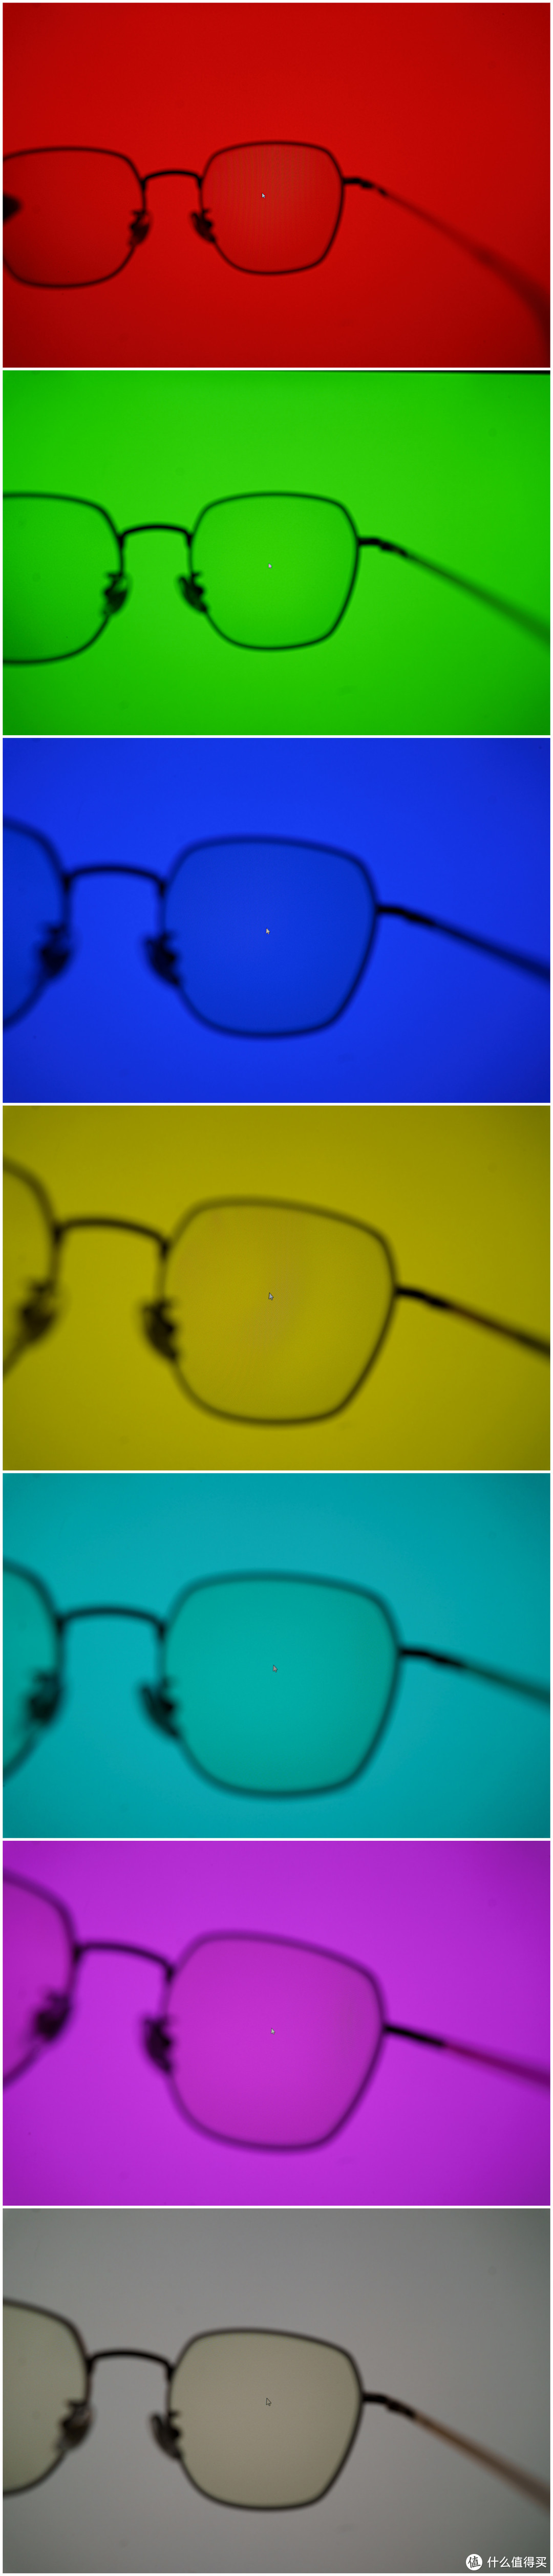 让用眼更轻松一些——【柠檬39003专业防蓝光眼镜】使用体验